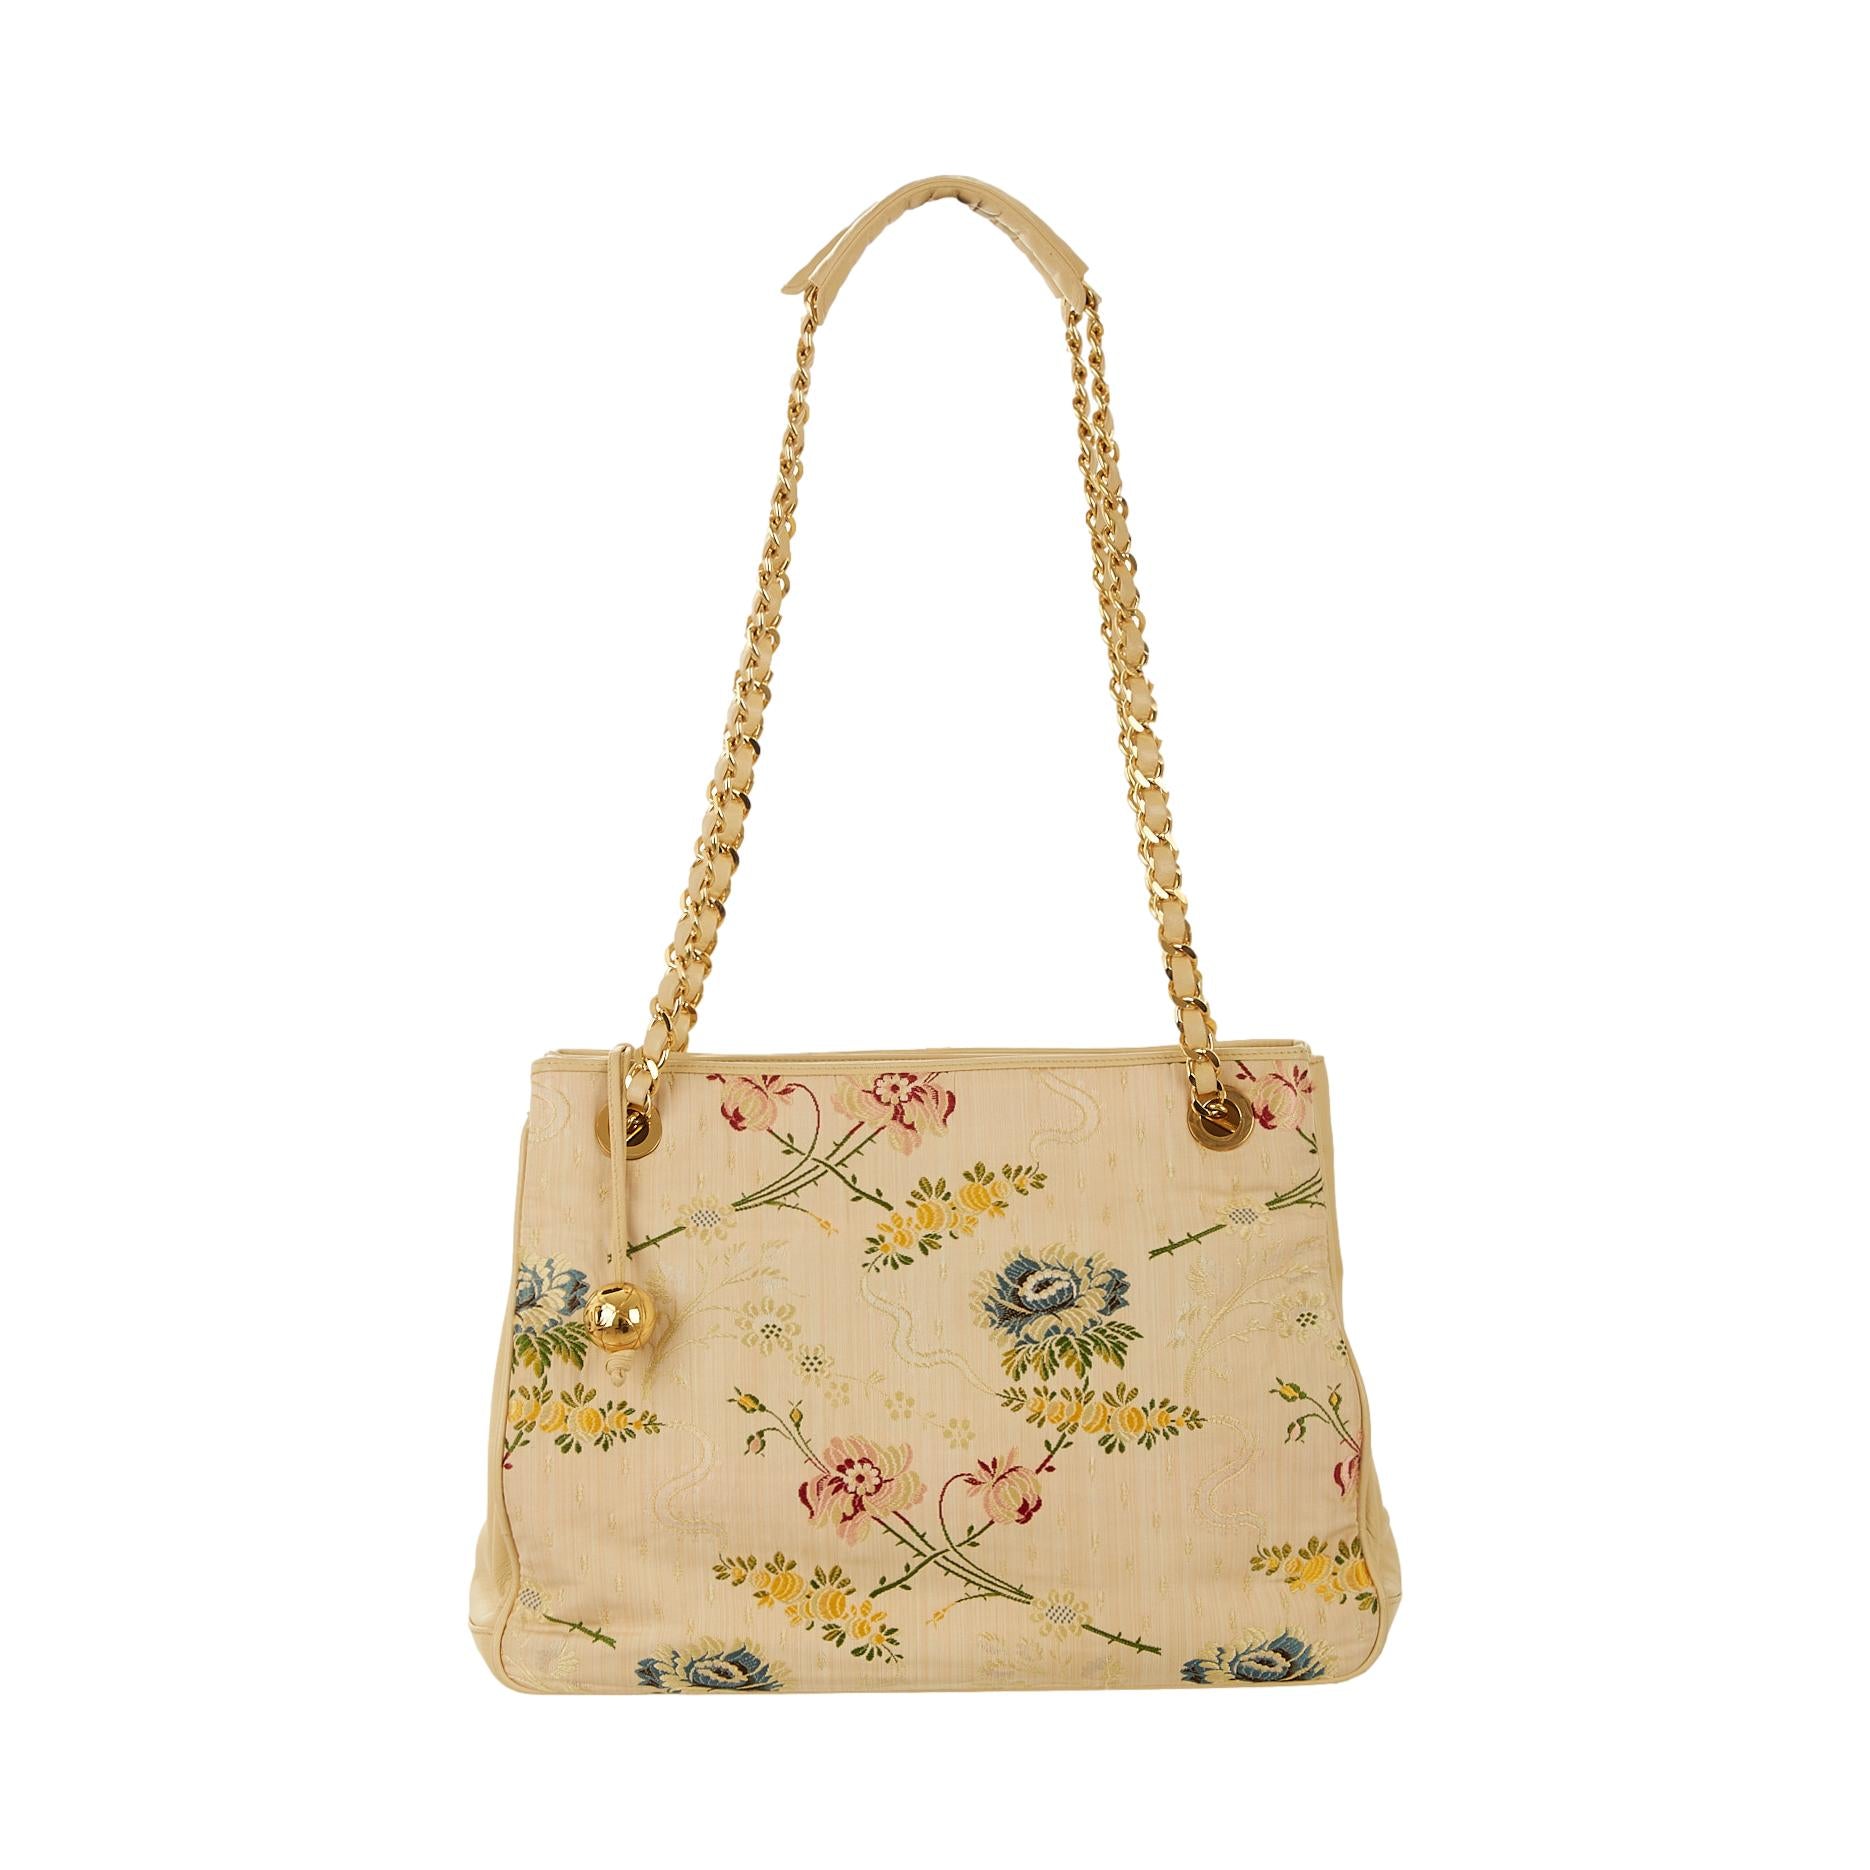 Chanel Beige Floral Embroidered Shoulder Bag